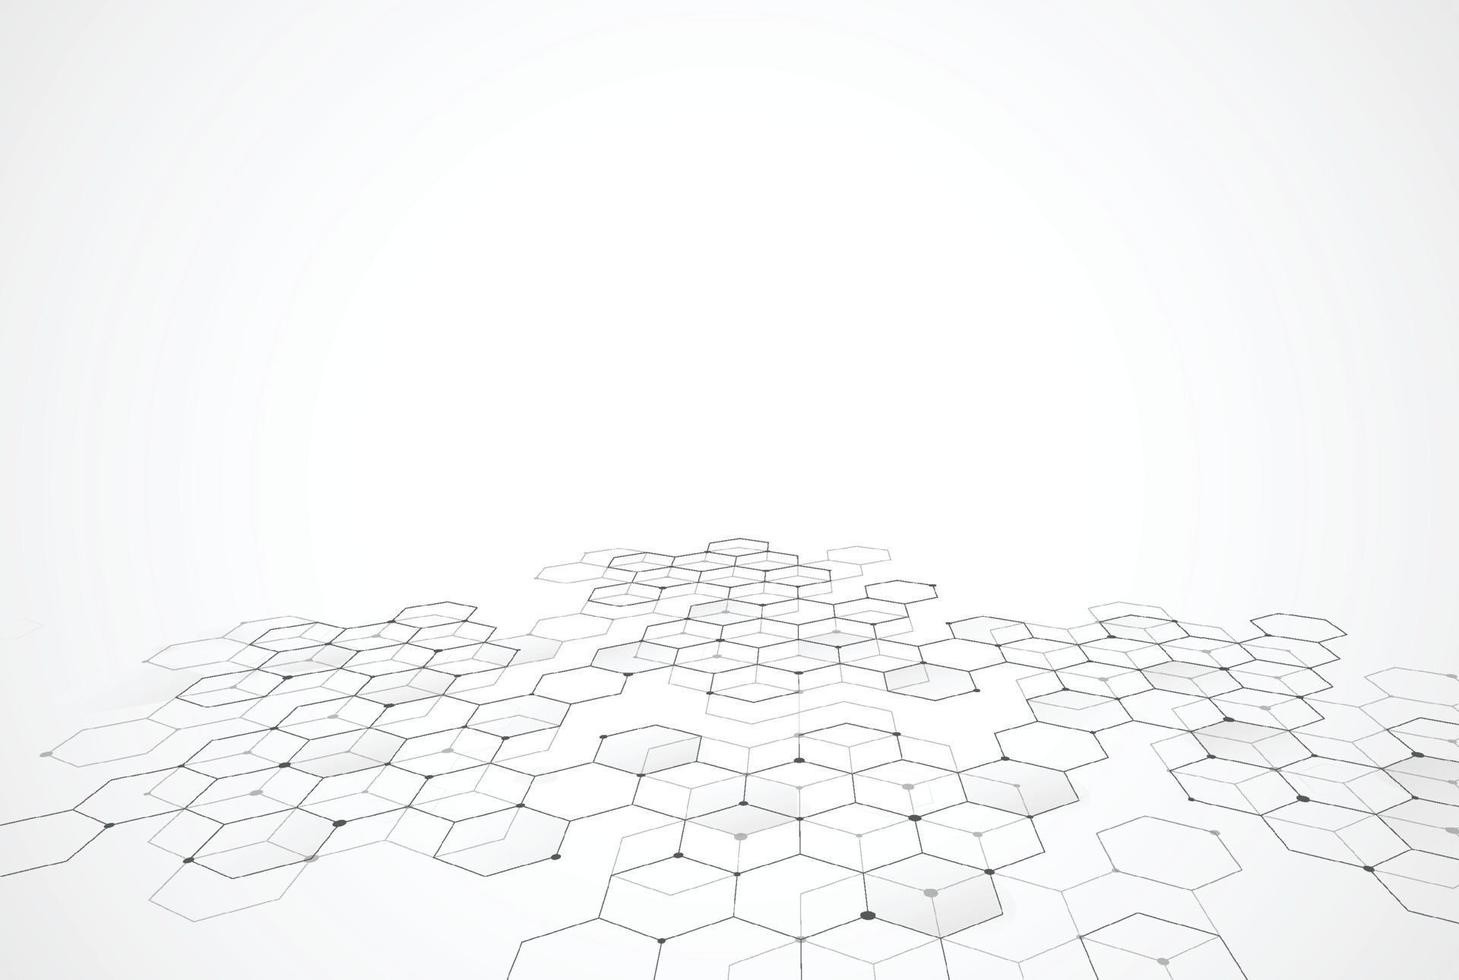 abstrakte hexagonale molekulare Strukturen im technologischen Hintergrund und im wissenschaftlichen Stil. medizinisches Design. Vektorillustration vektor